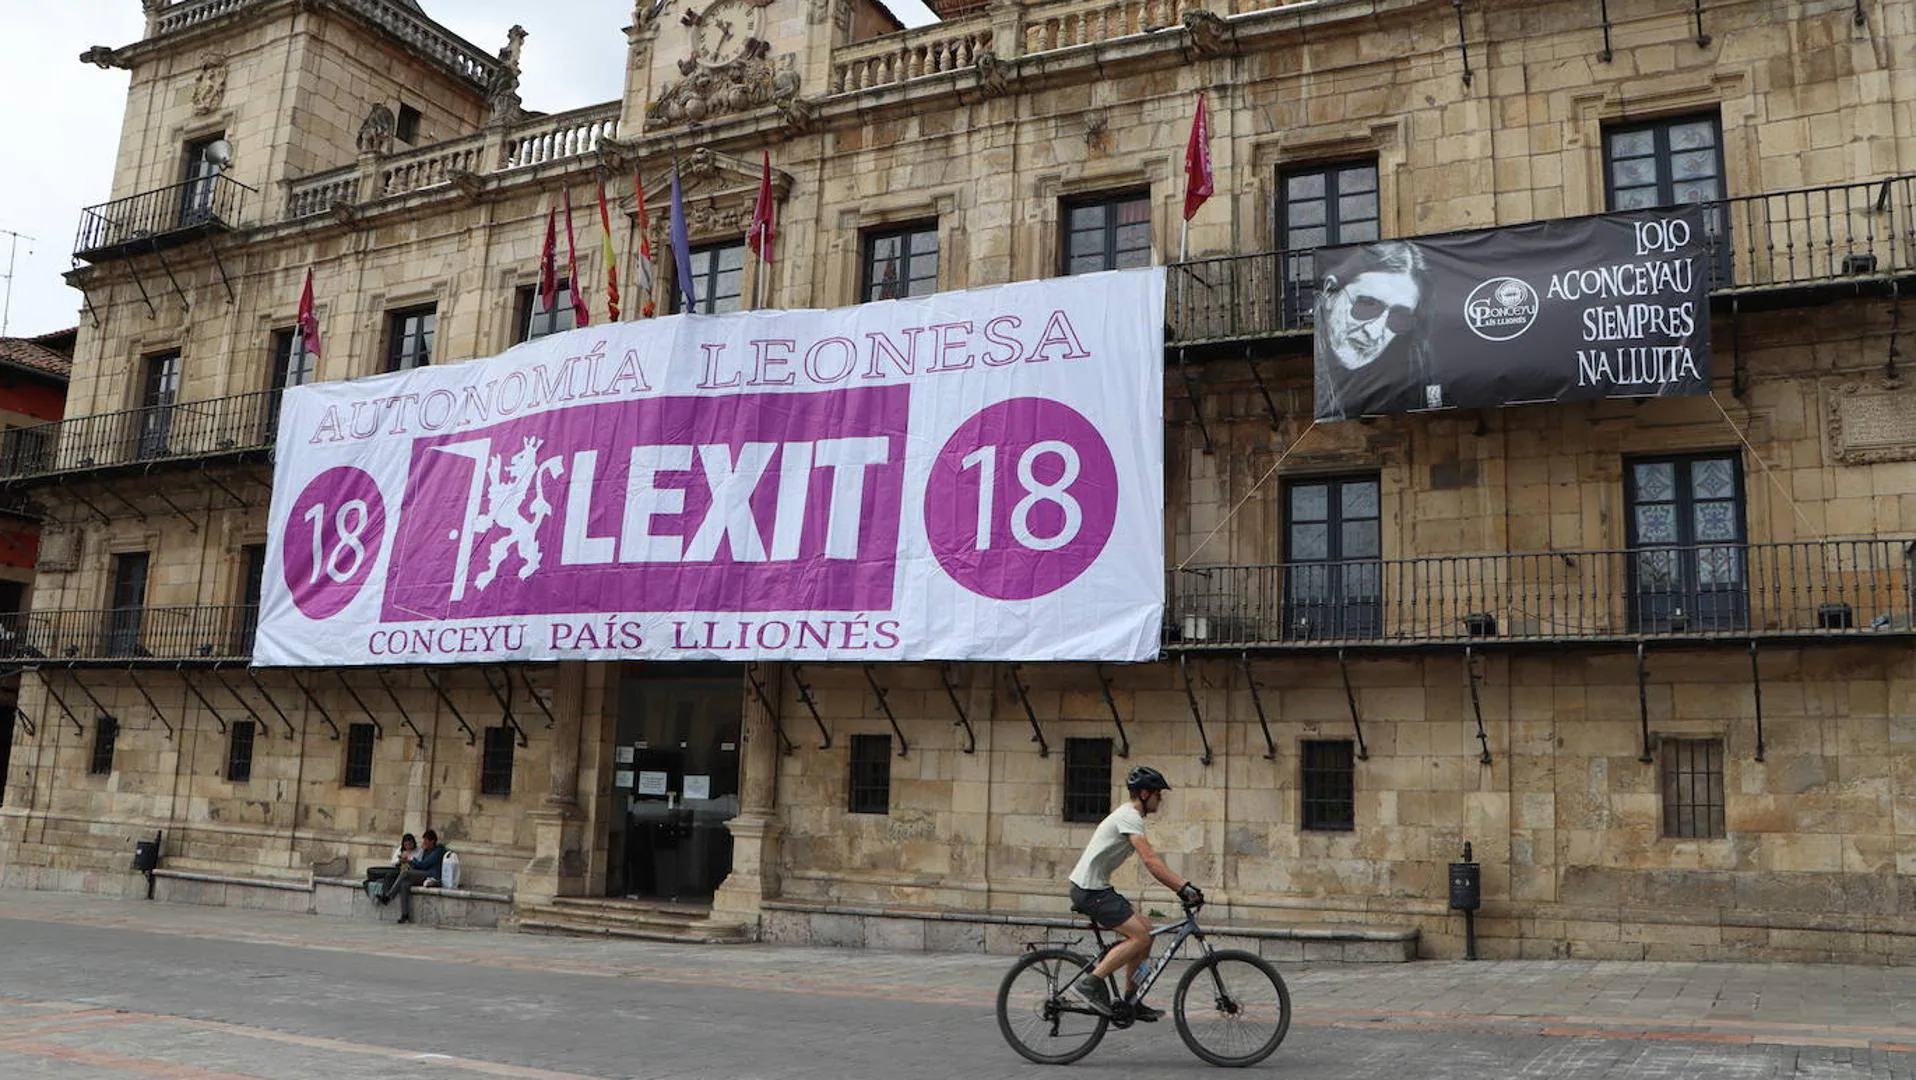 El Ayuntamiento escenifica su apoyo al Lexit al permitir una pancarta  gigante en la Plaza Mayor 